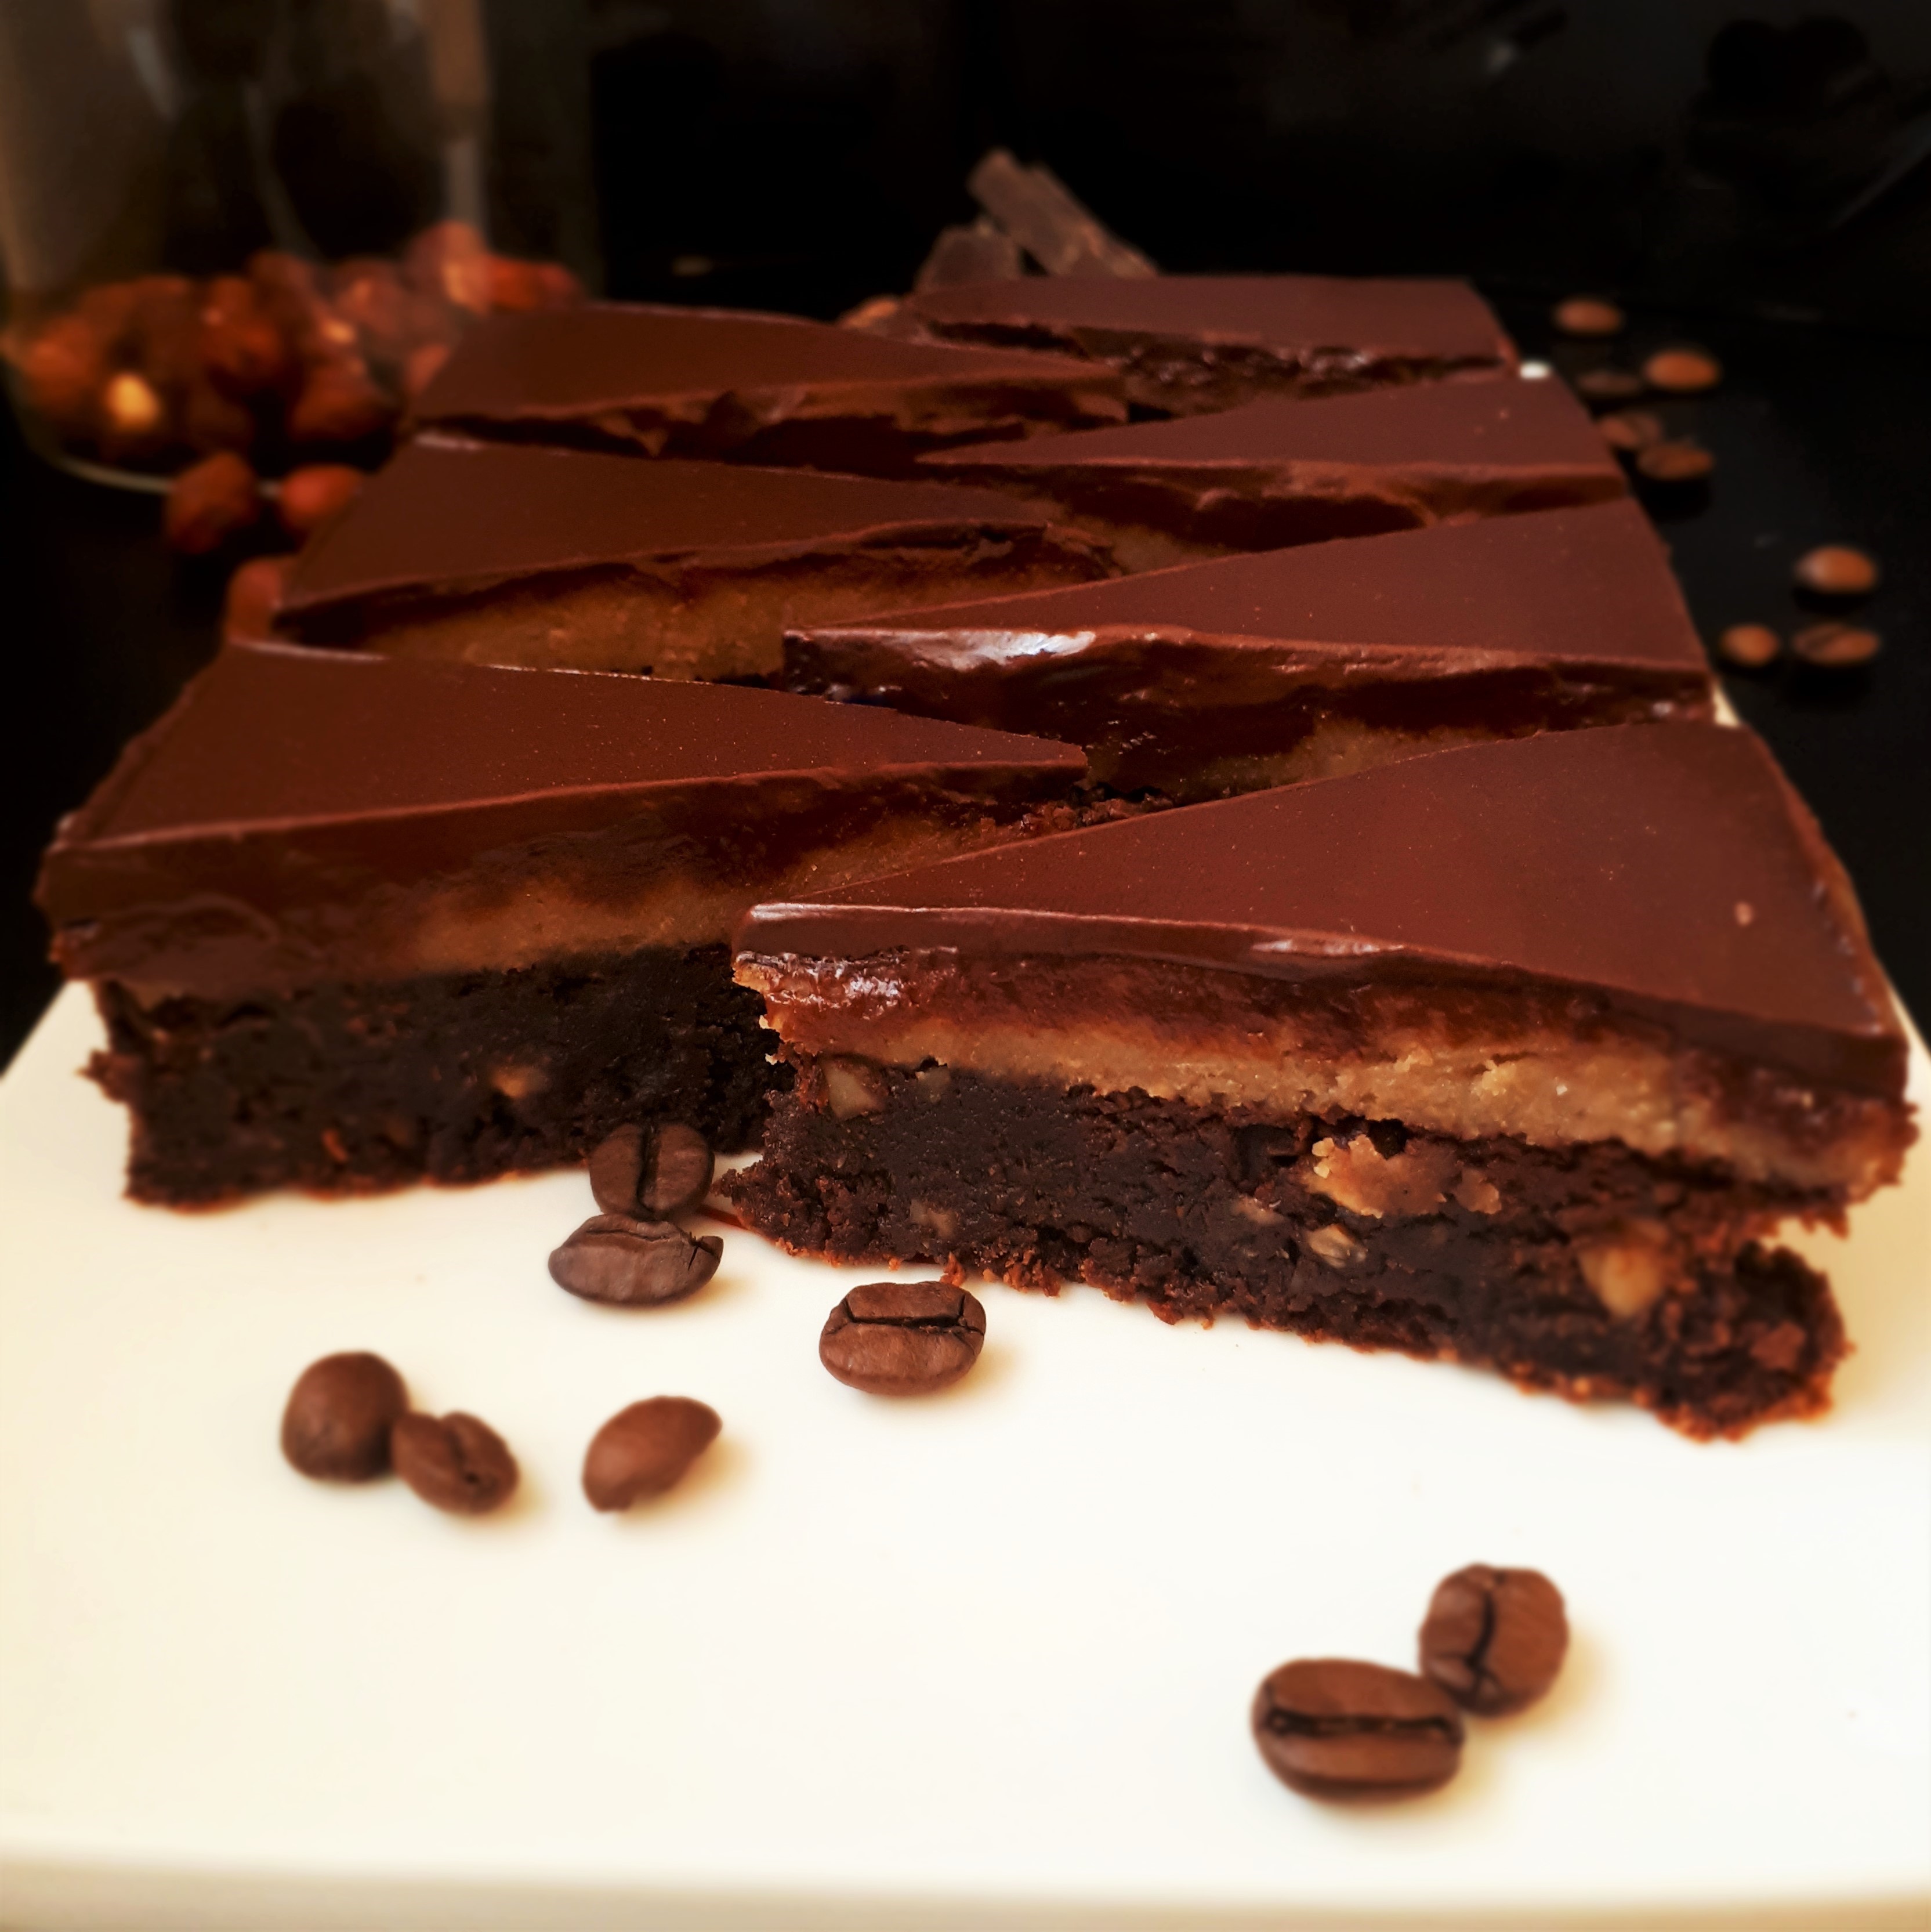 Sedem trojuholníkov brownies poliateho čokoládou na bielom obdĺžnikovom tanieri obsypané kávovými zrnami sklená dóza s lieskovými orechmi kúsky horkej čokolády